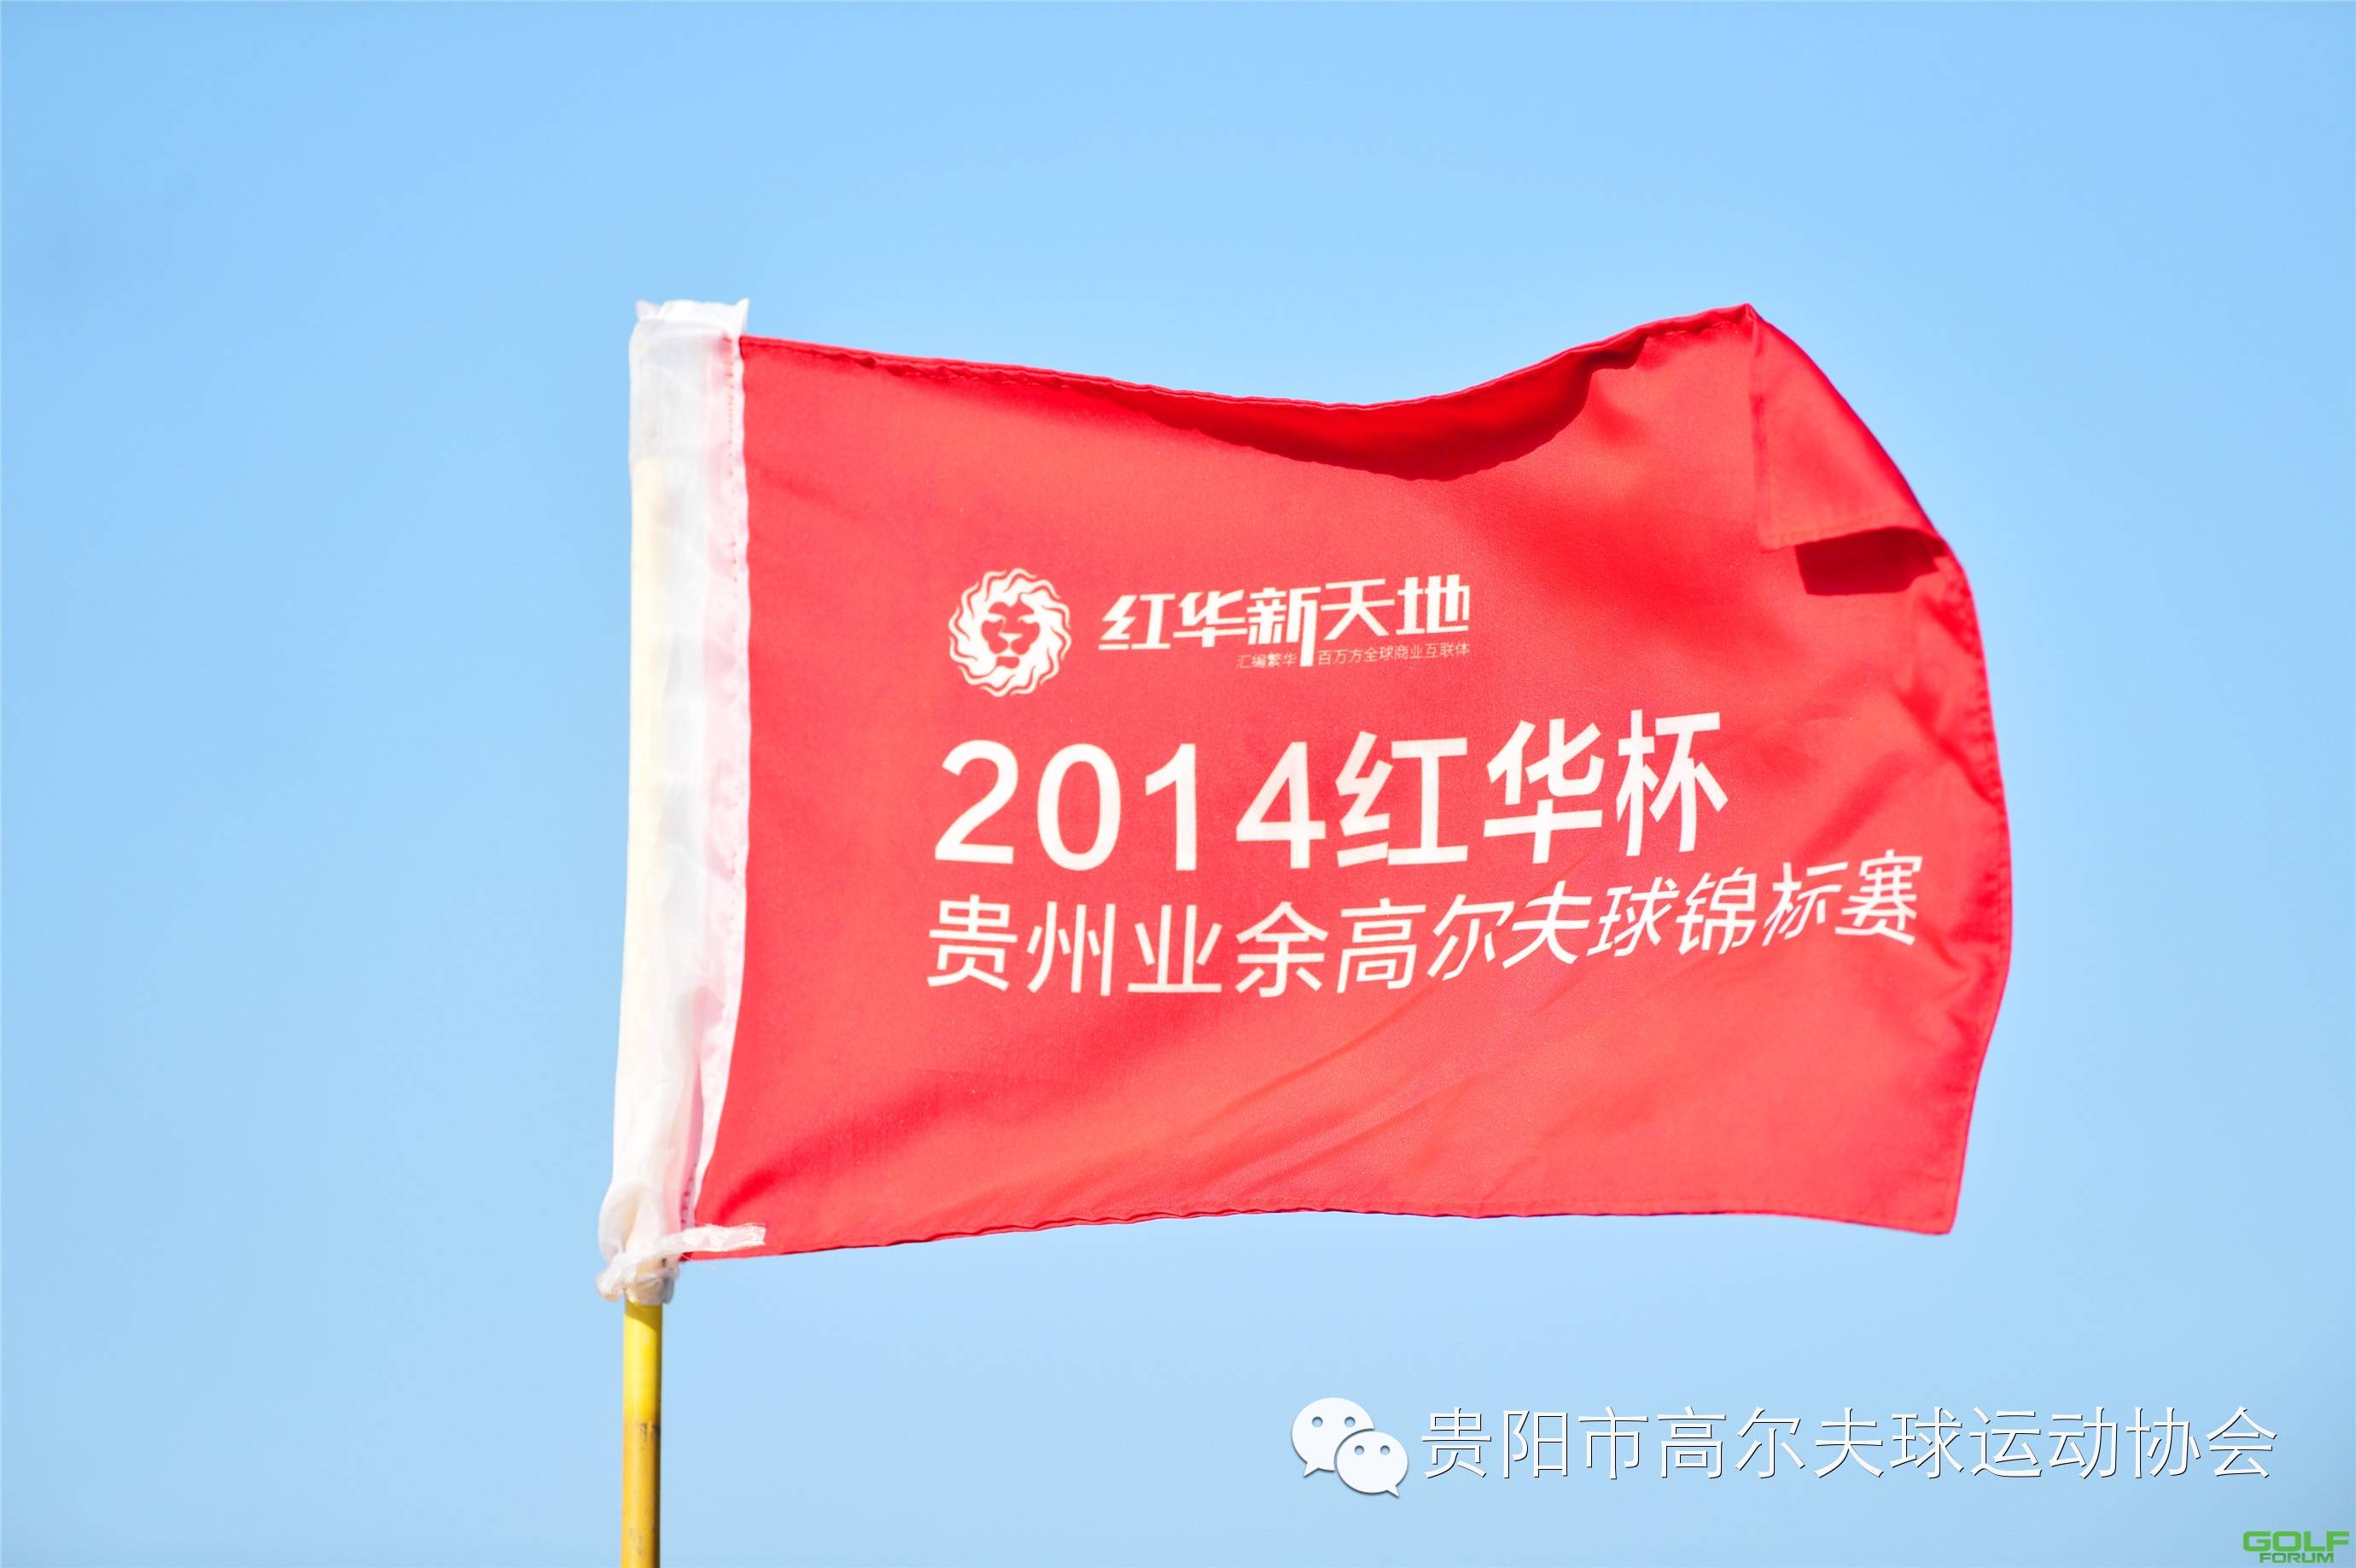 2014红华杯·贵州业余高尔夫锦标赛精彩花絮